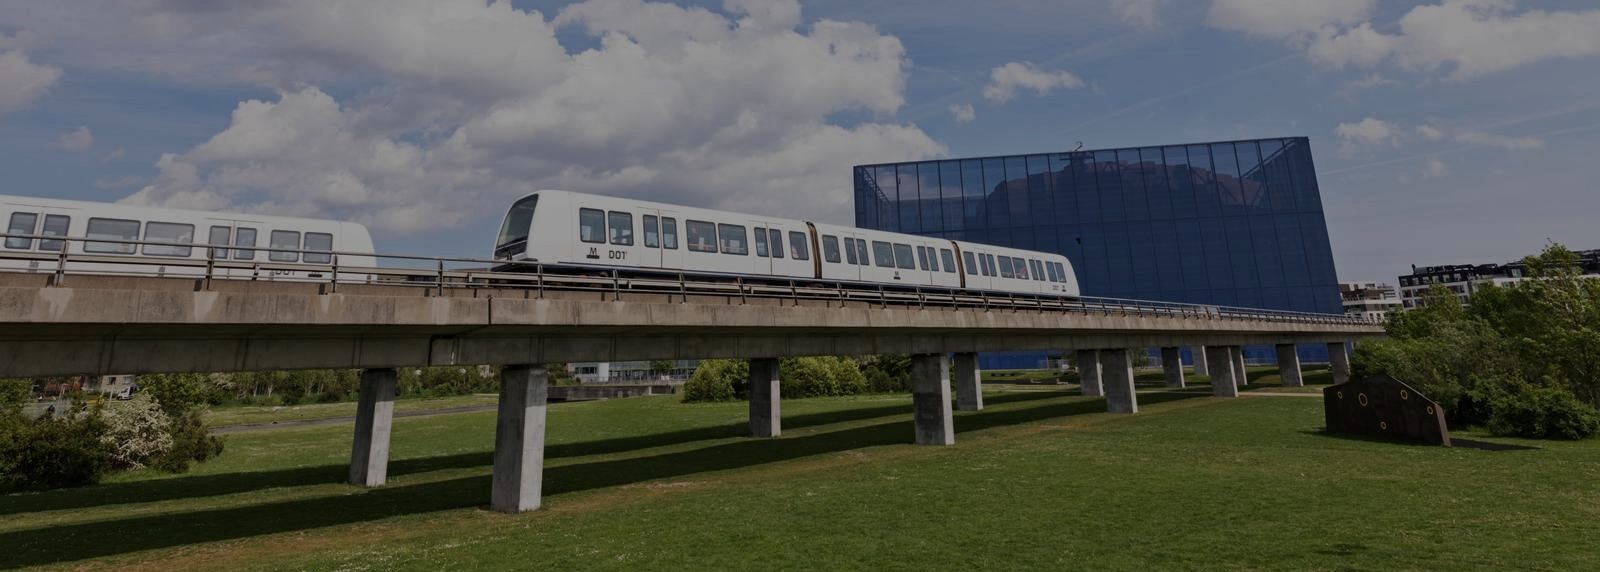 Metroselskabet har valgt Fremtidens Fundament til nyt kundecenter